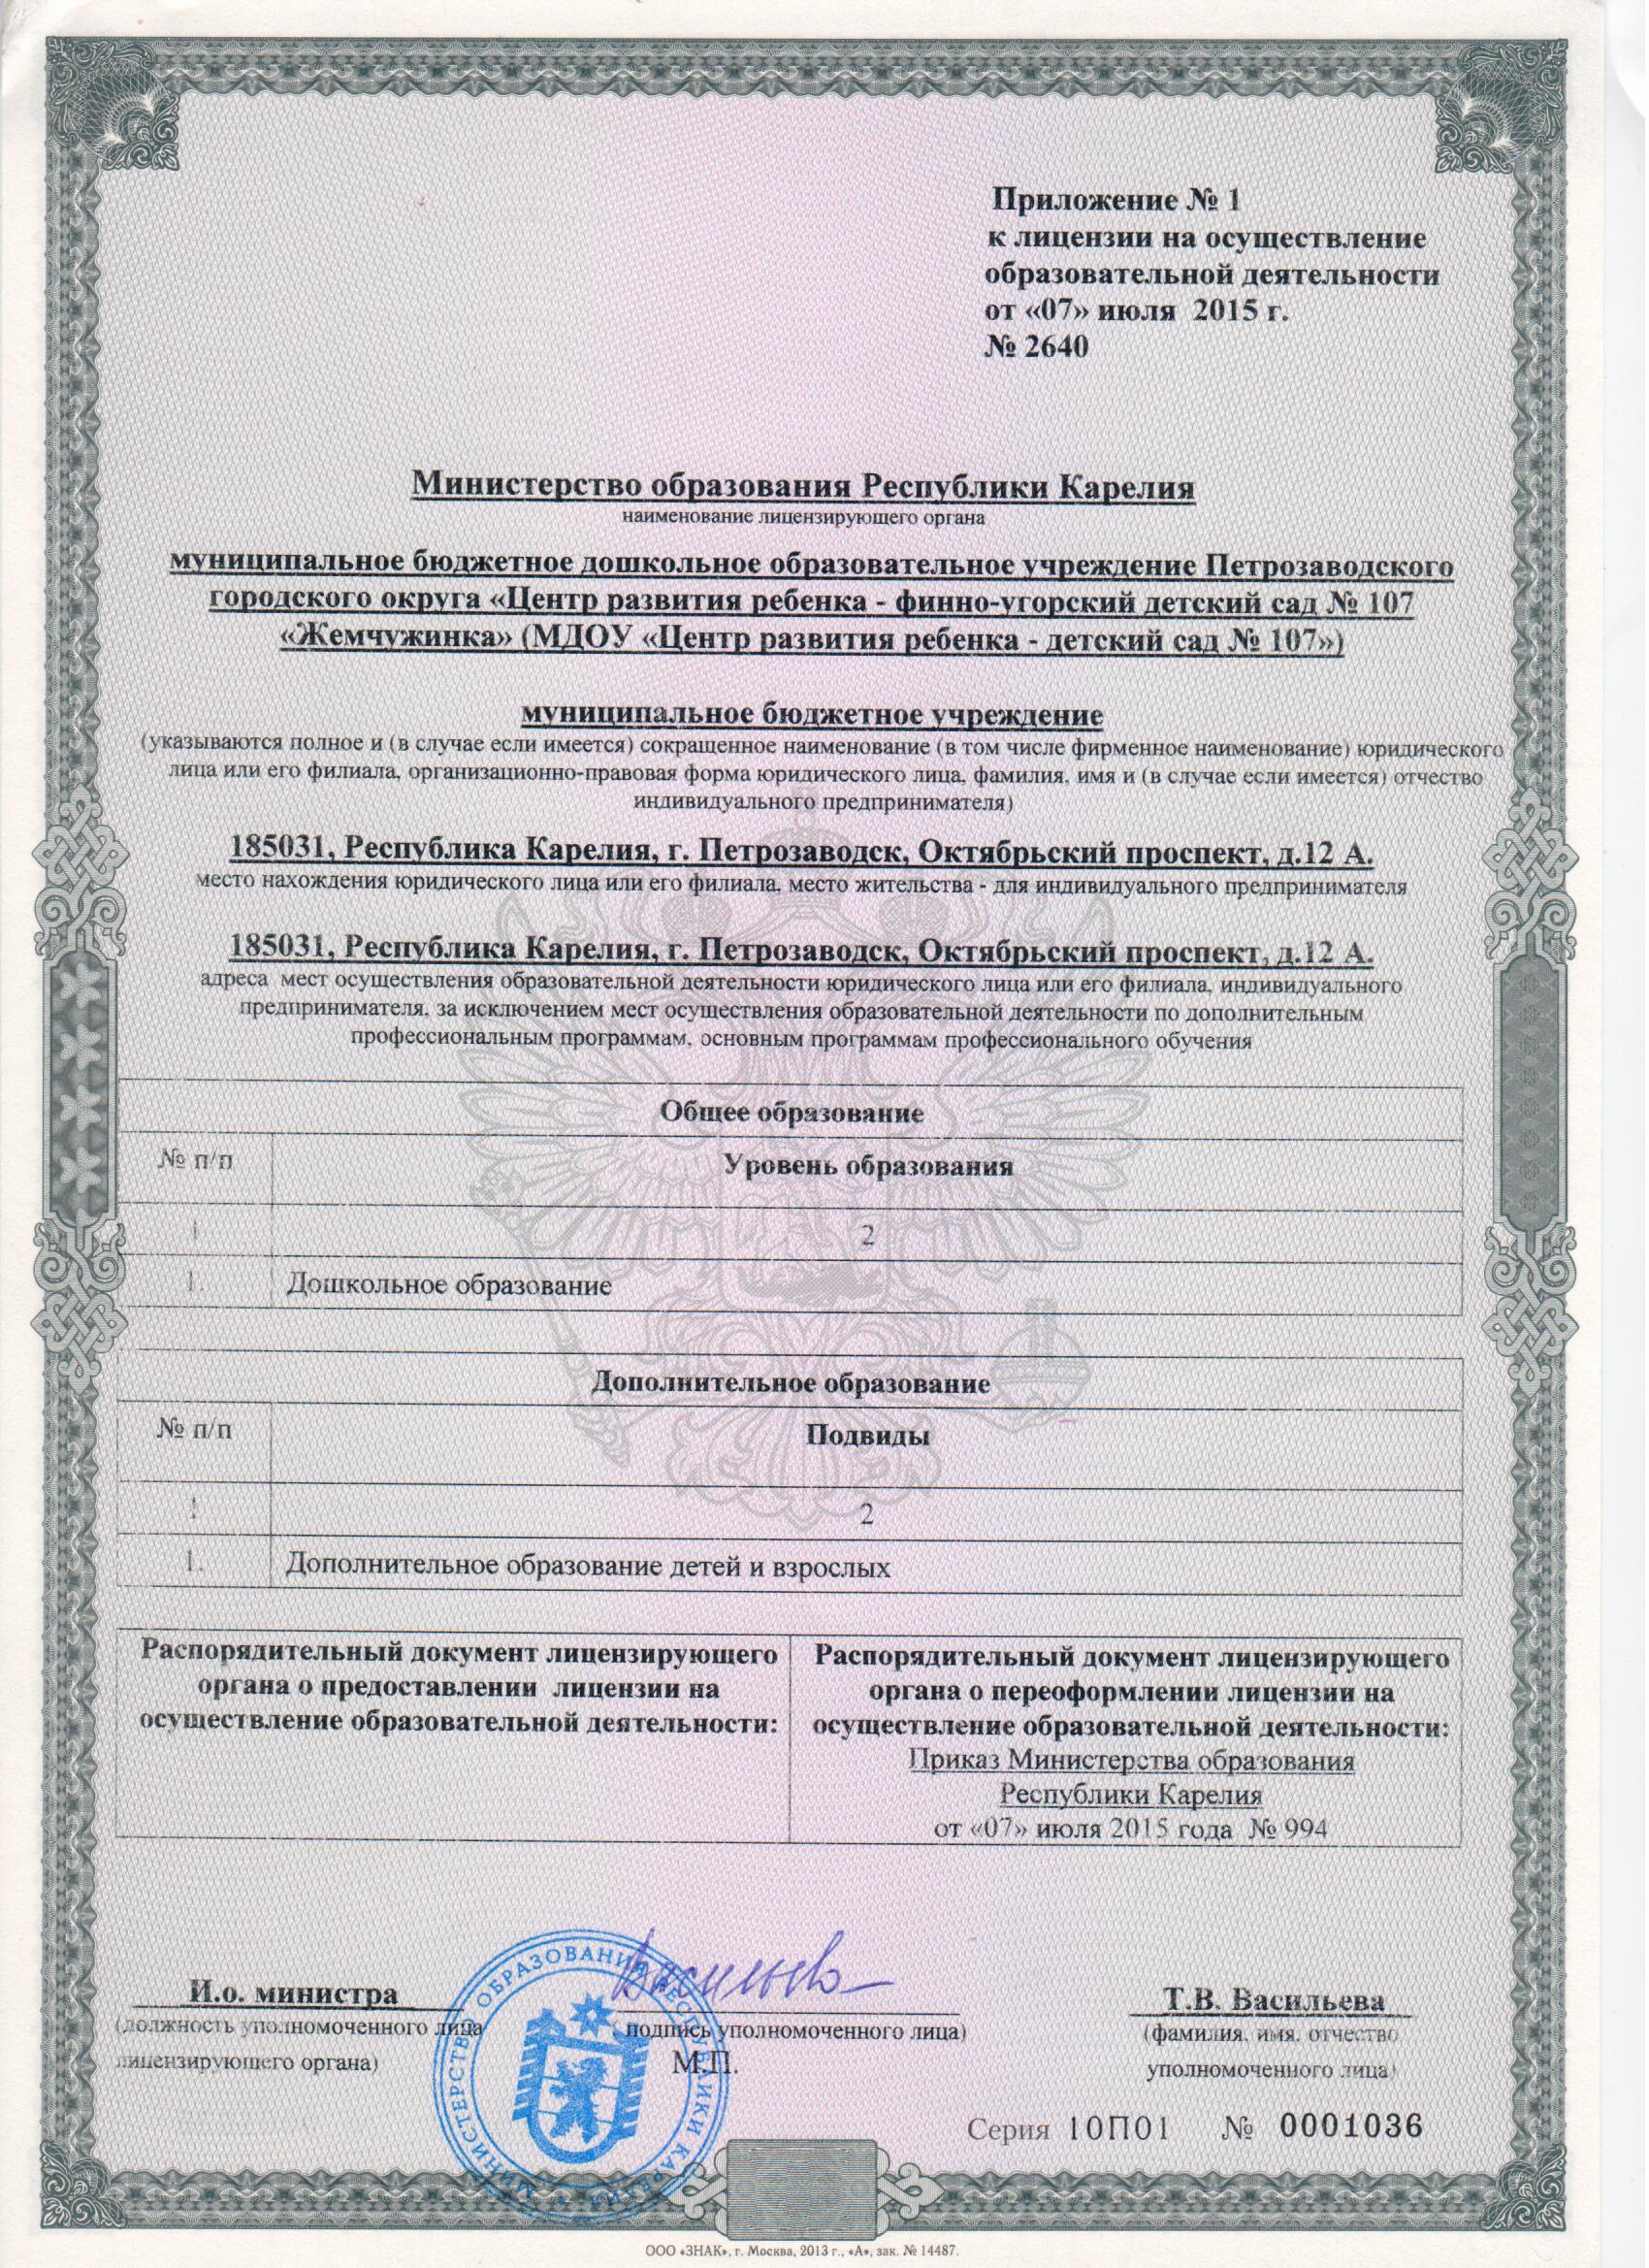 Приложение к лицензии от 07.07.2015